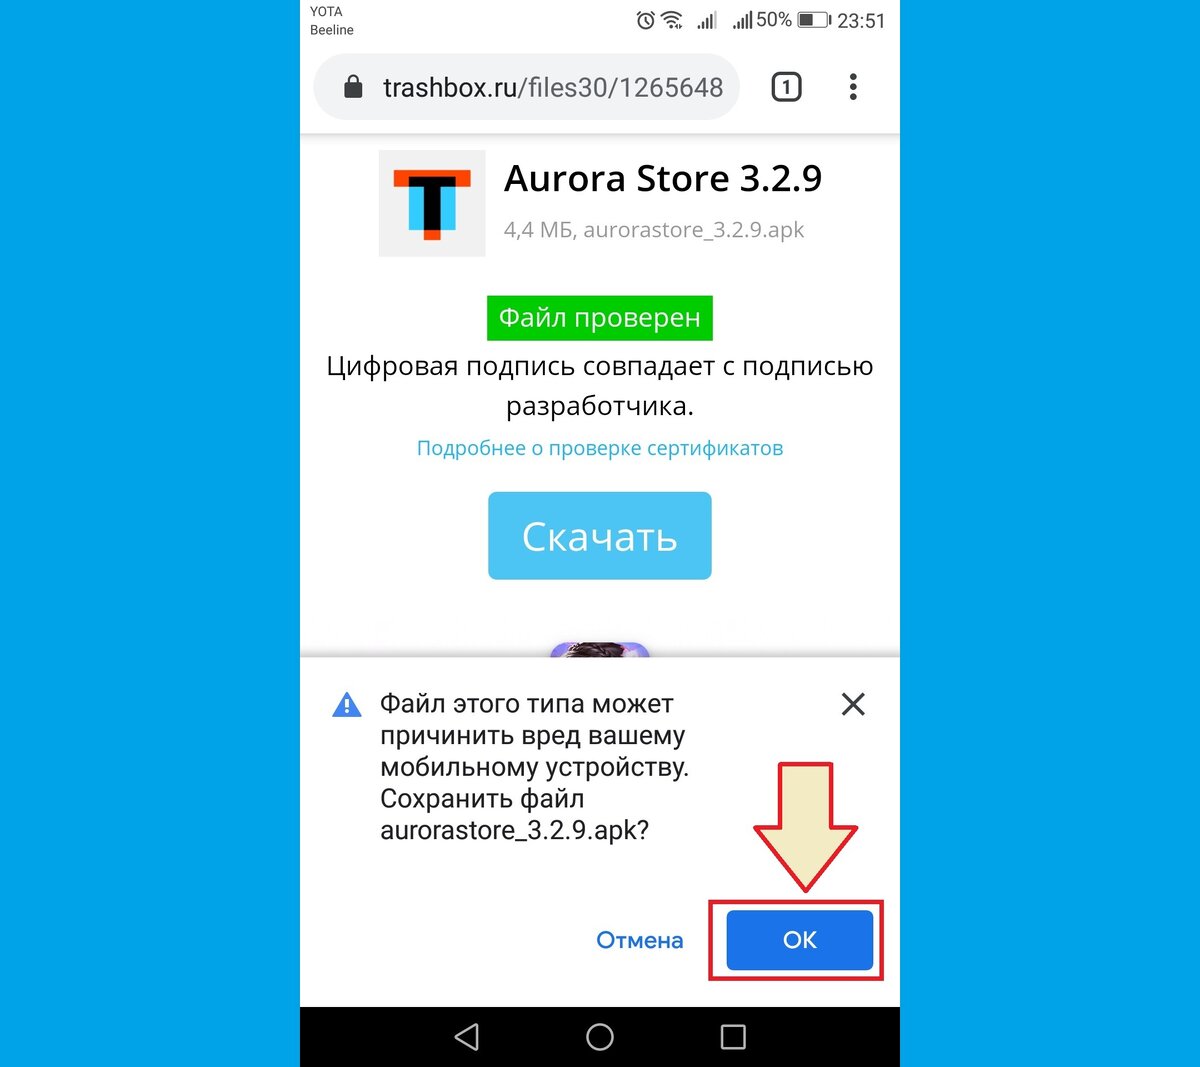 Как подключить телеграмм на телефон бесплатно на русском языке андроид и установить приложение фото 85